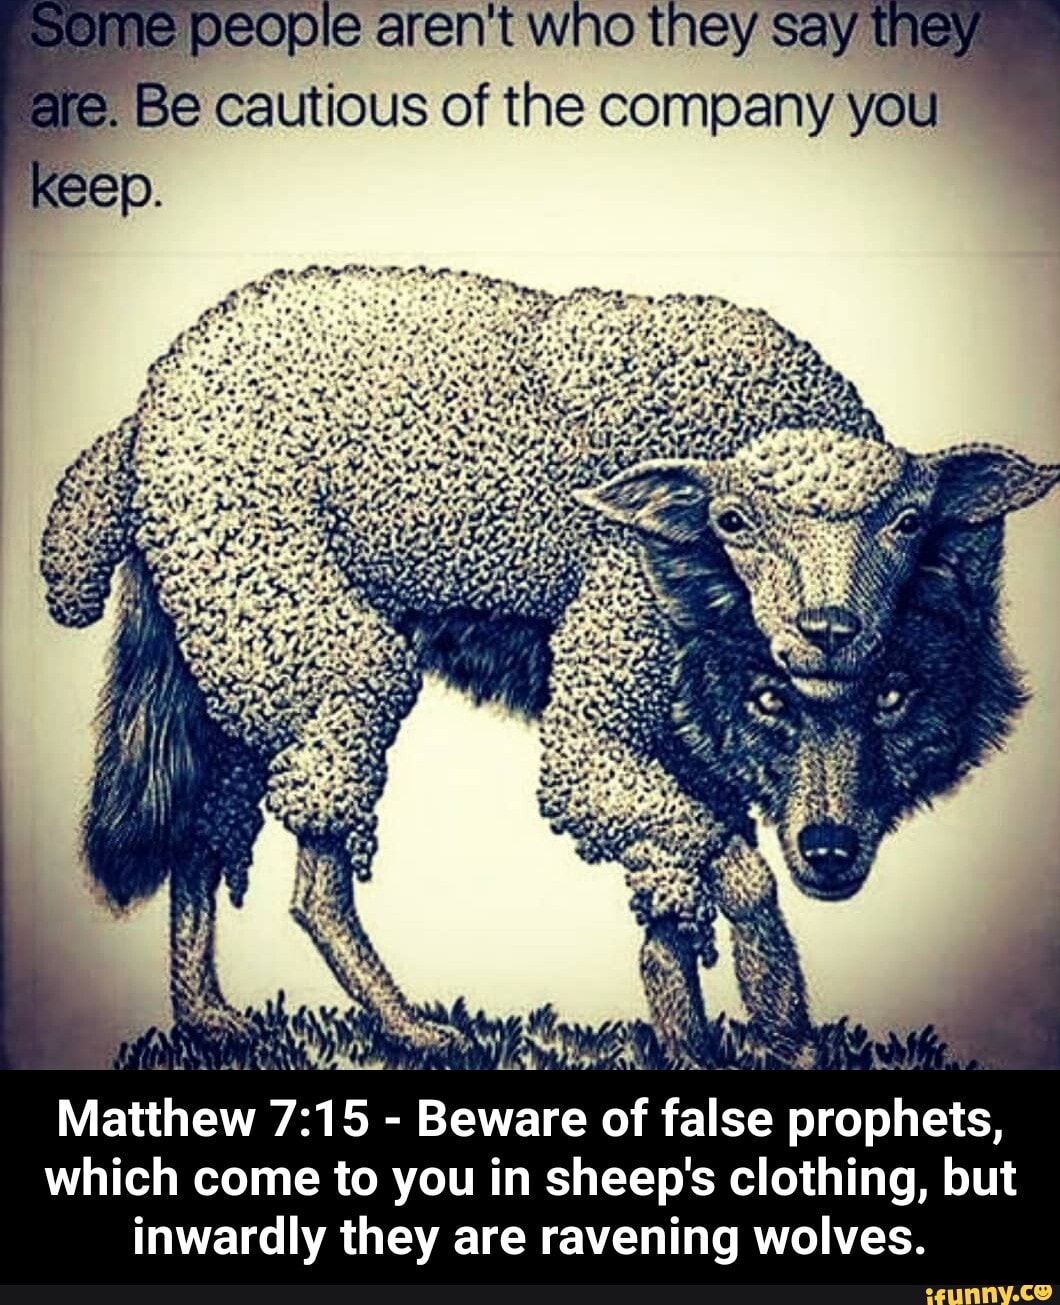 false prophets bible verse